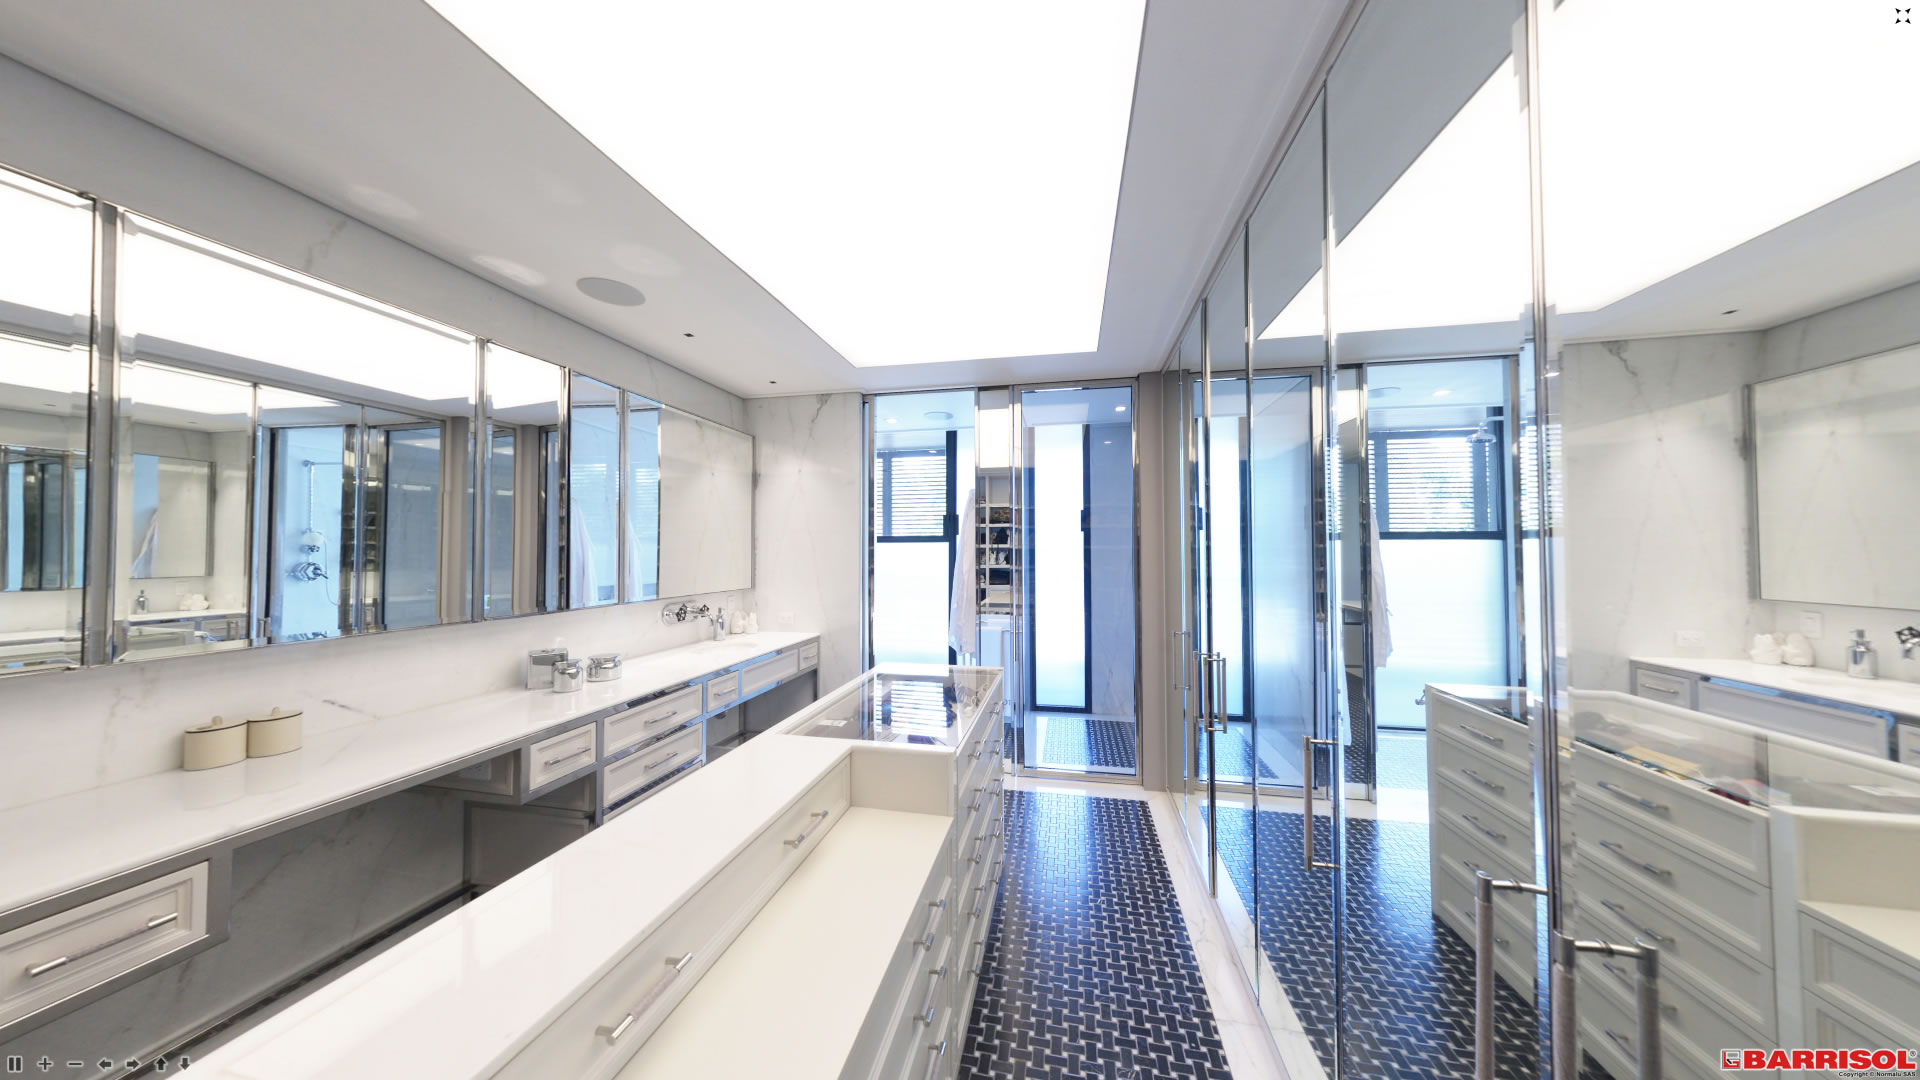 Salle de bain avec Plafond Barrisol - éclairage central